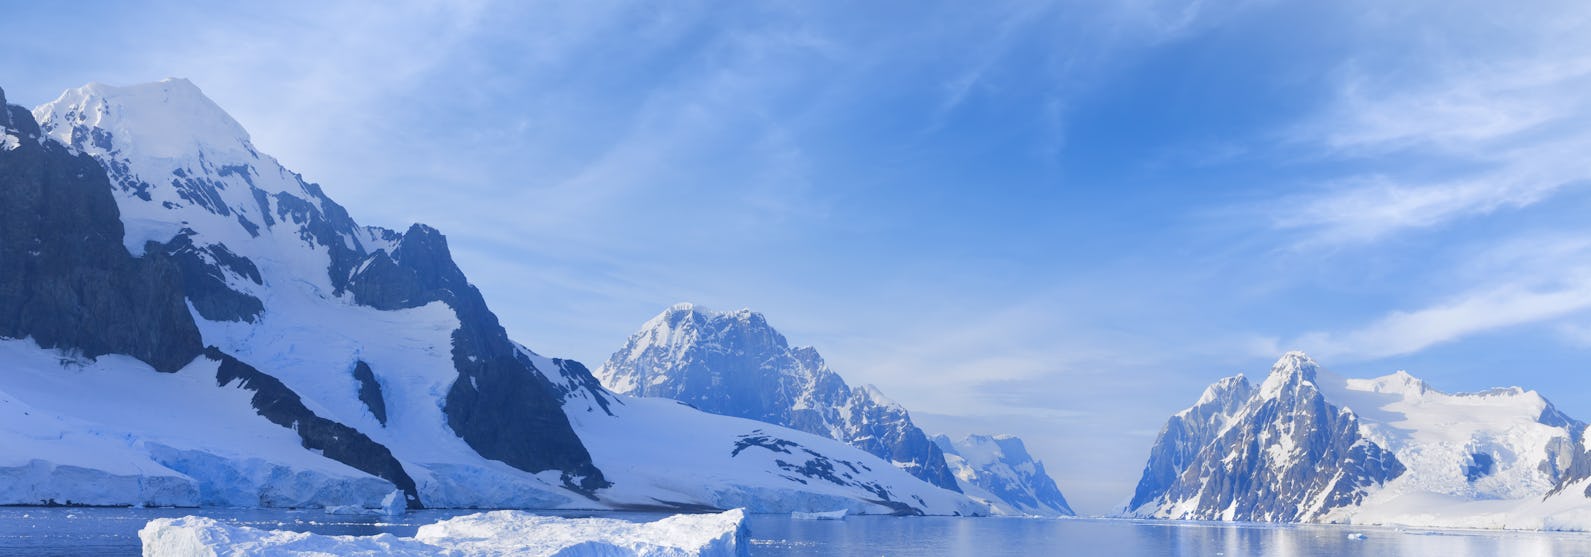 Antarctica-Polar